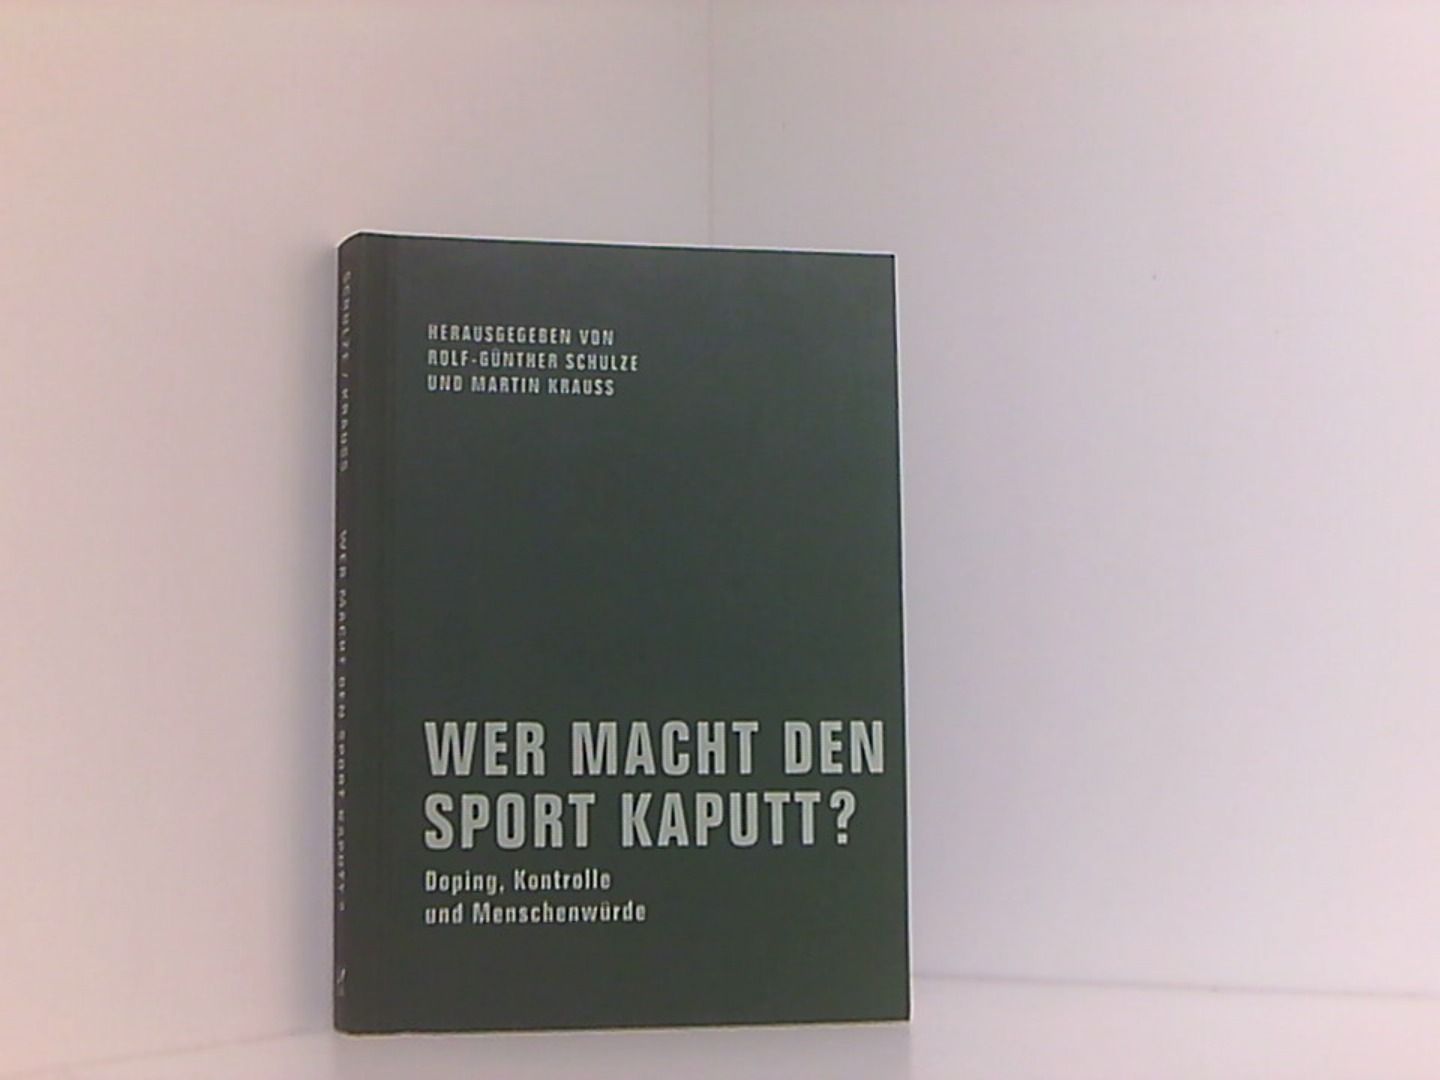 Wer macht den Sport kaputt?: Doping, Kontrolle und Menschenwürde - Rolf-Günther, Schulze, Krauß Martin Gumbrecht Hans Ulrich  u. a.